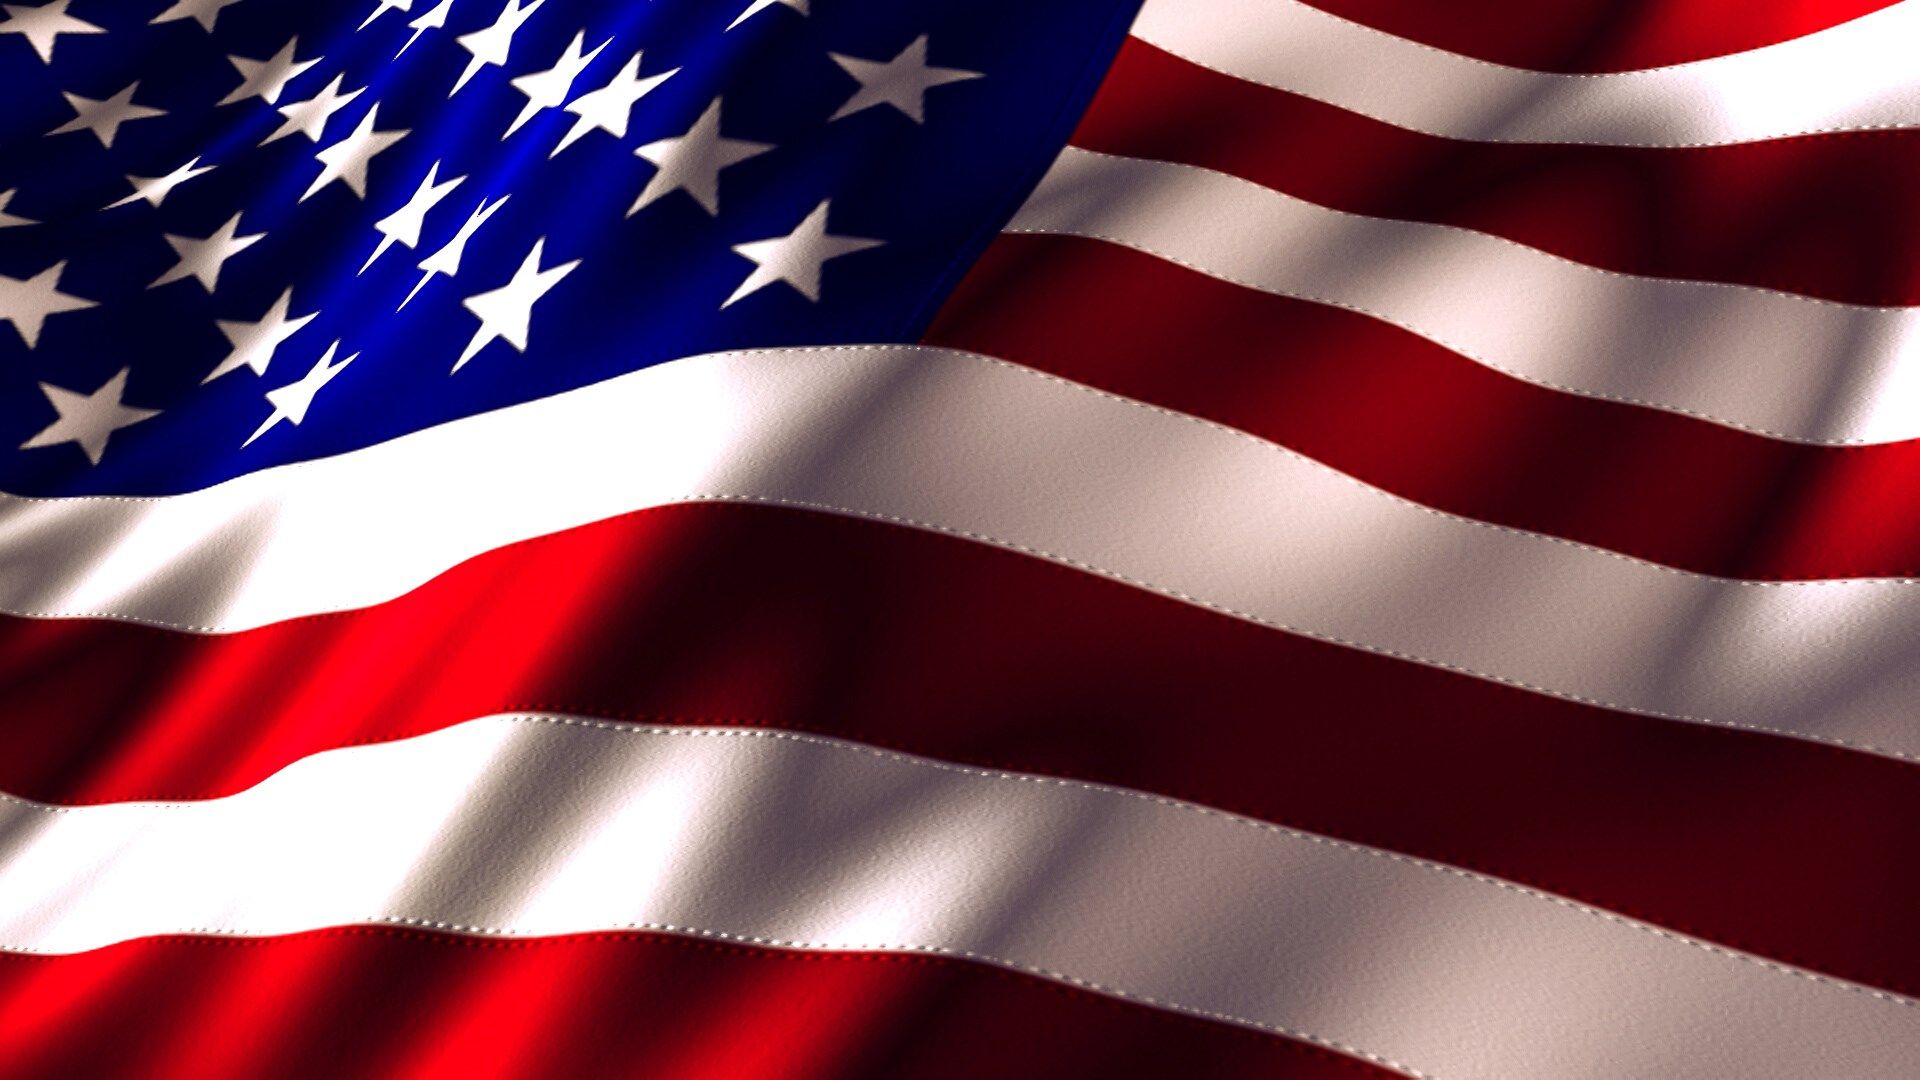 american flag wallpaper hd pack | ololoshenka | Pinterest | American ...